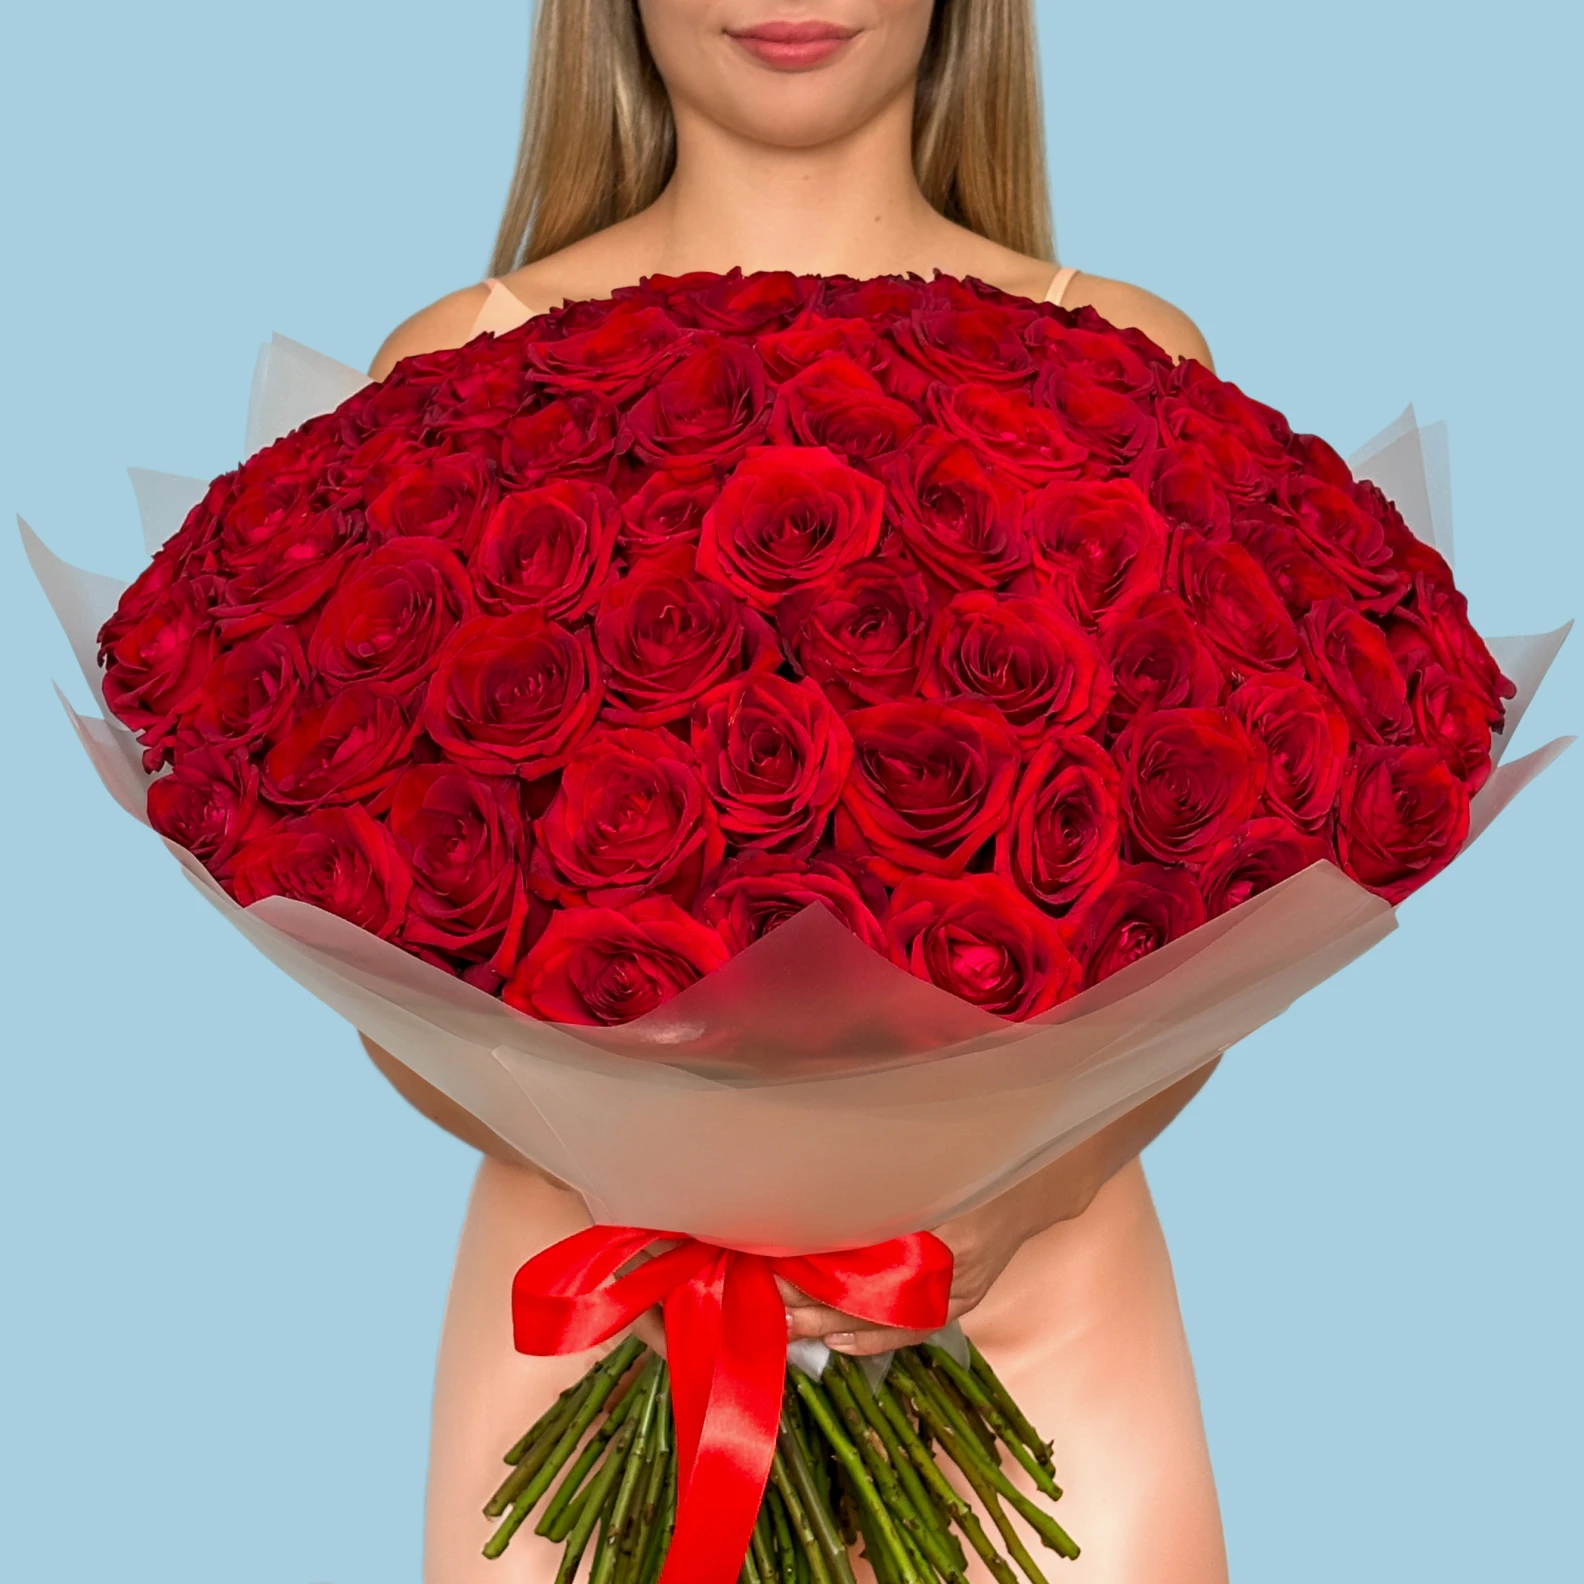 100 Premium Red Roses - image №1